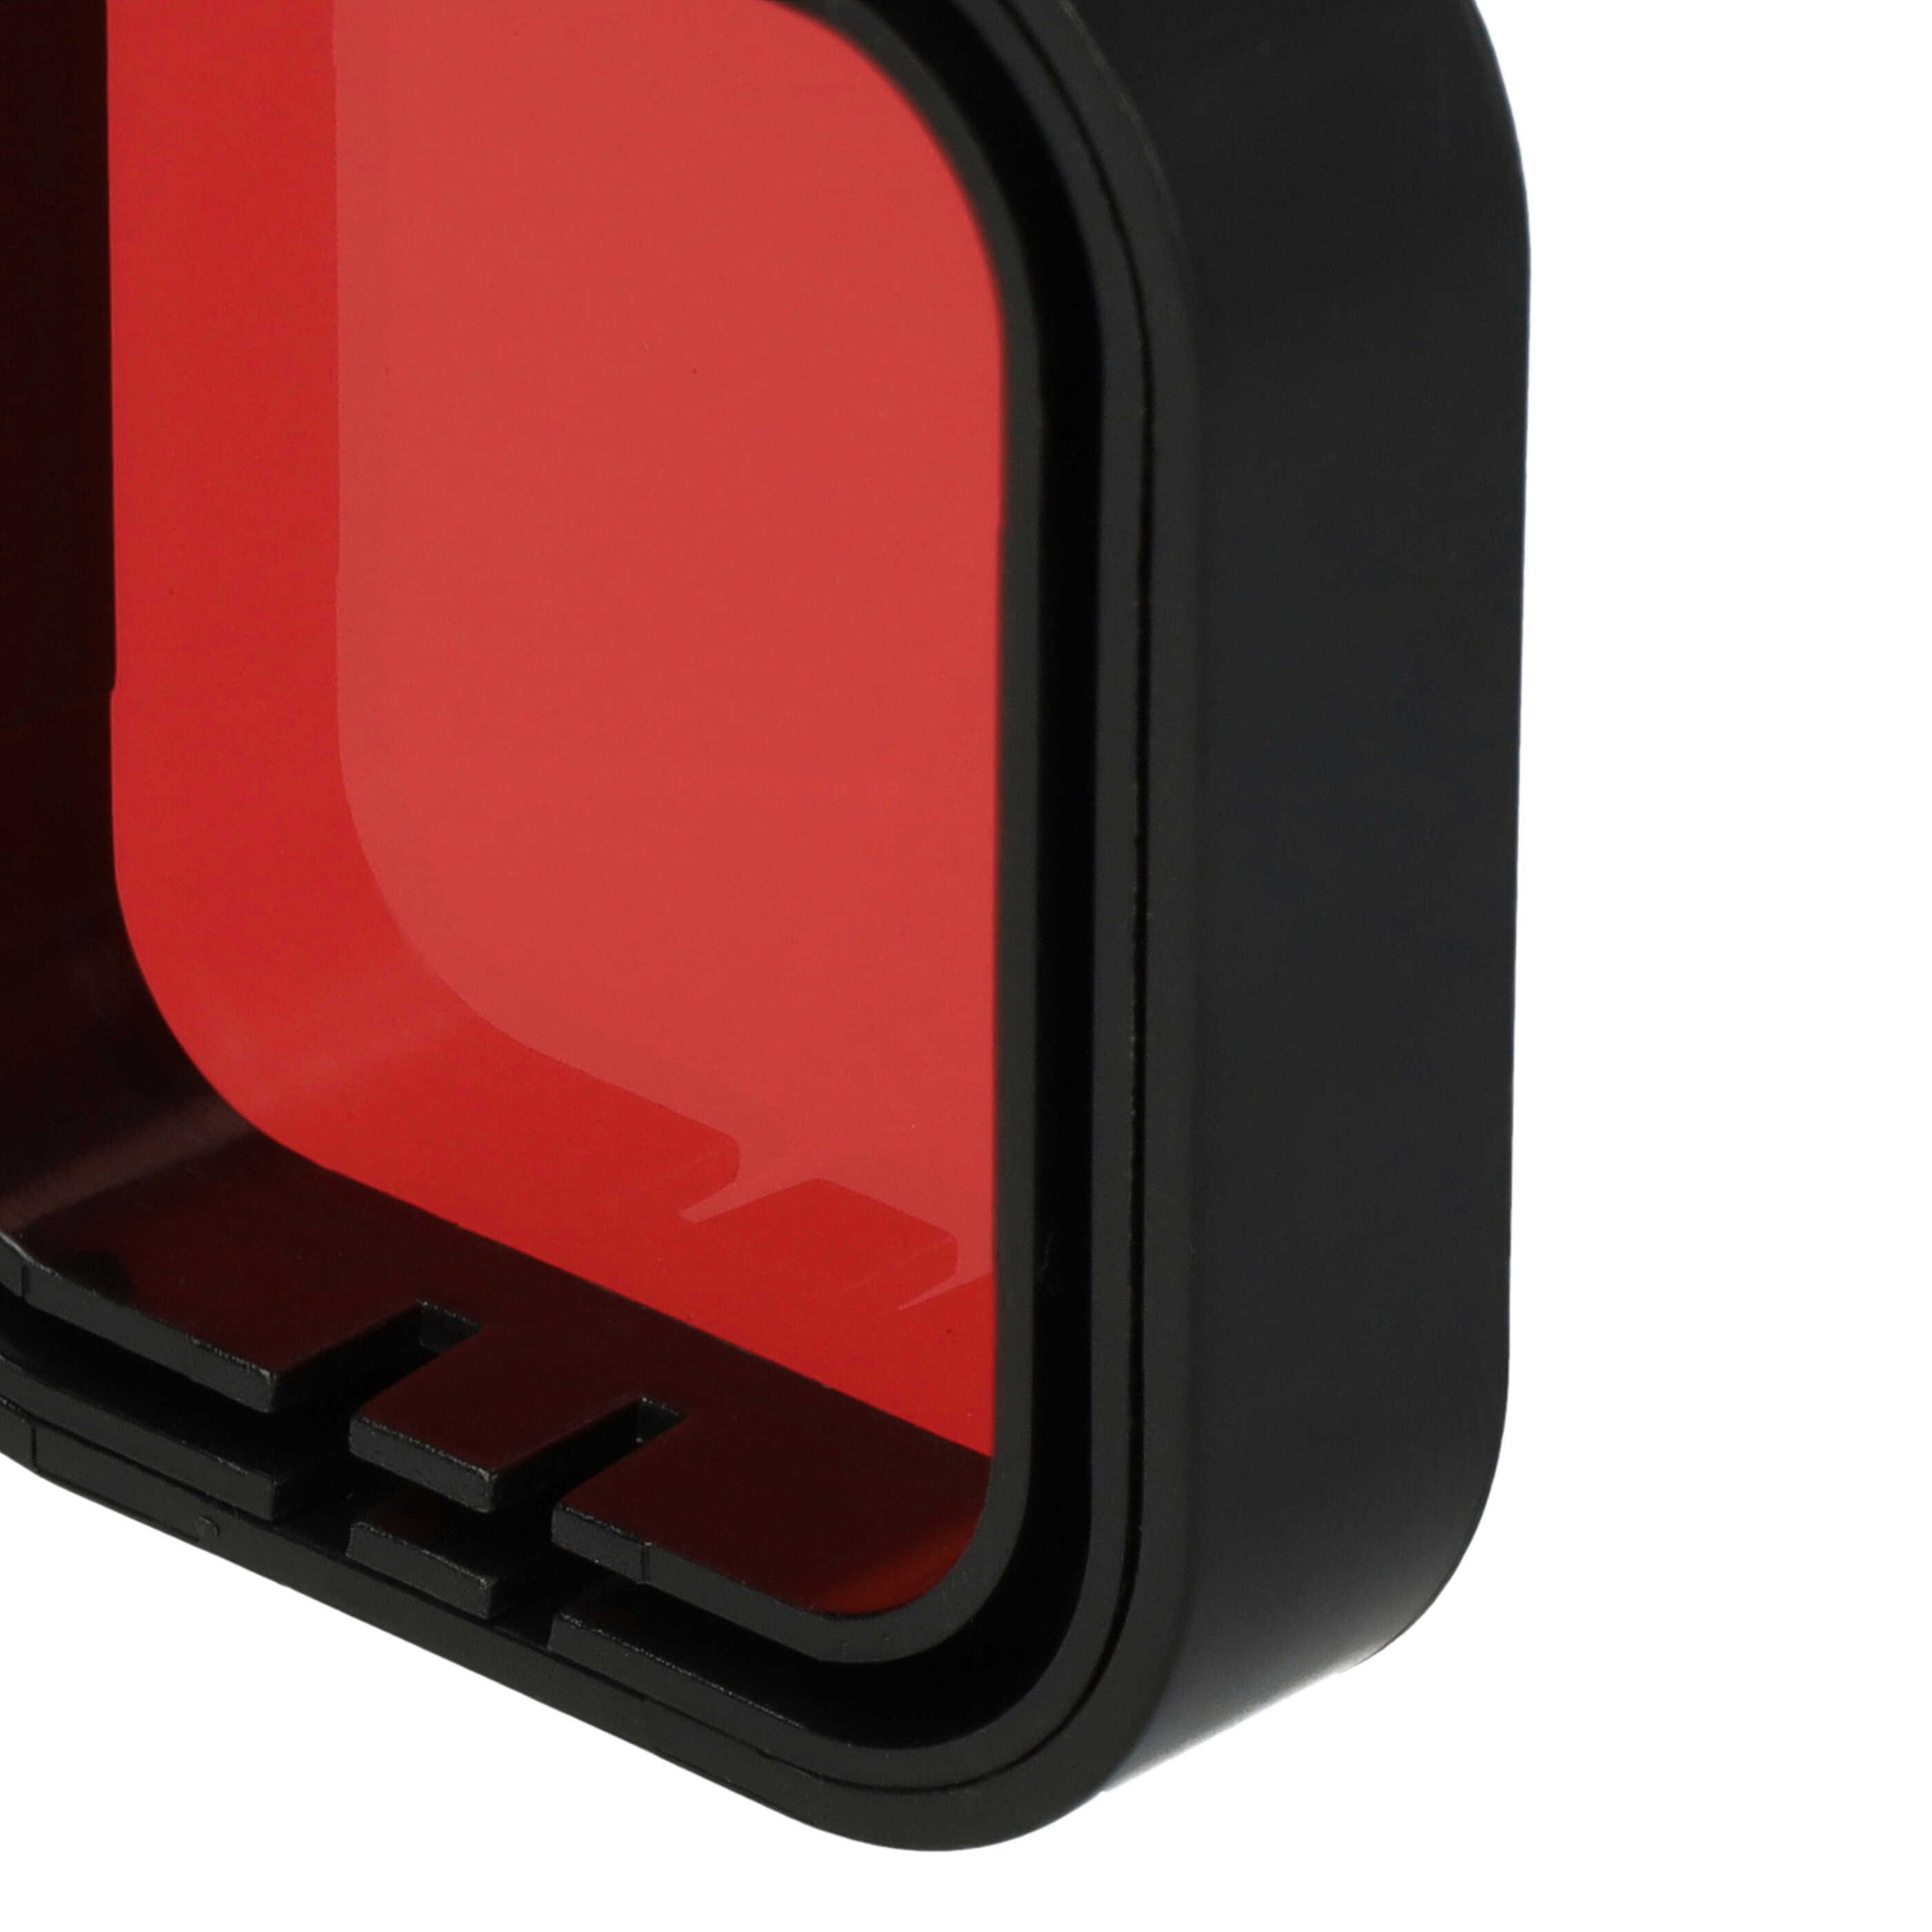 Filtr barwny do odbudowy podwodnej kamery sportowej GoPro Hero 5, 6 - Filtr czerwony